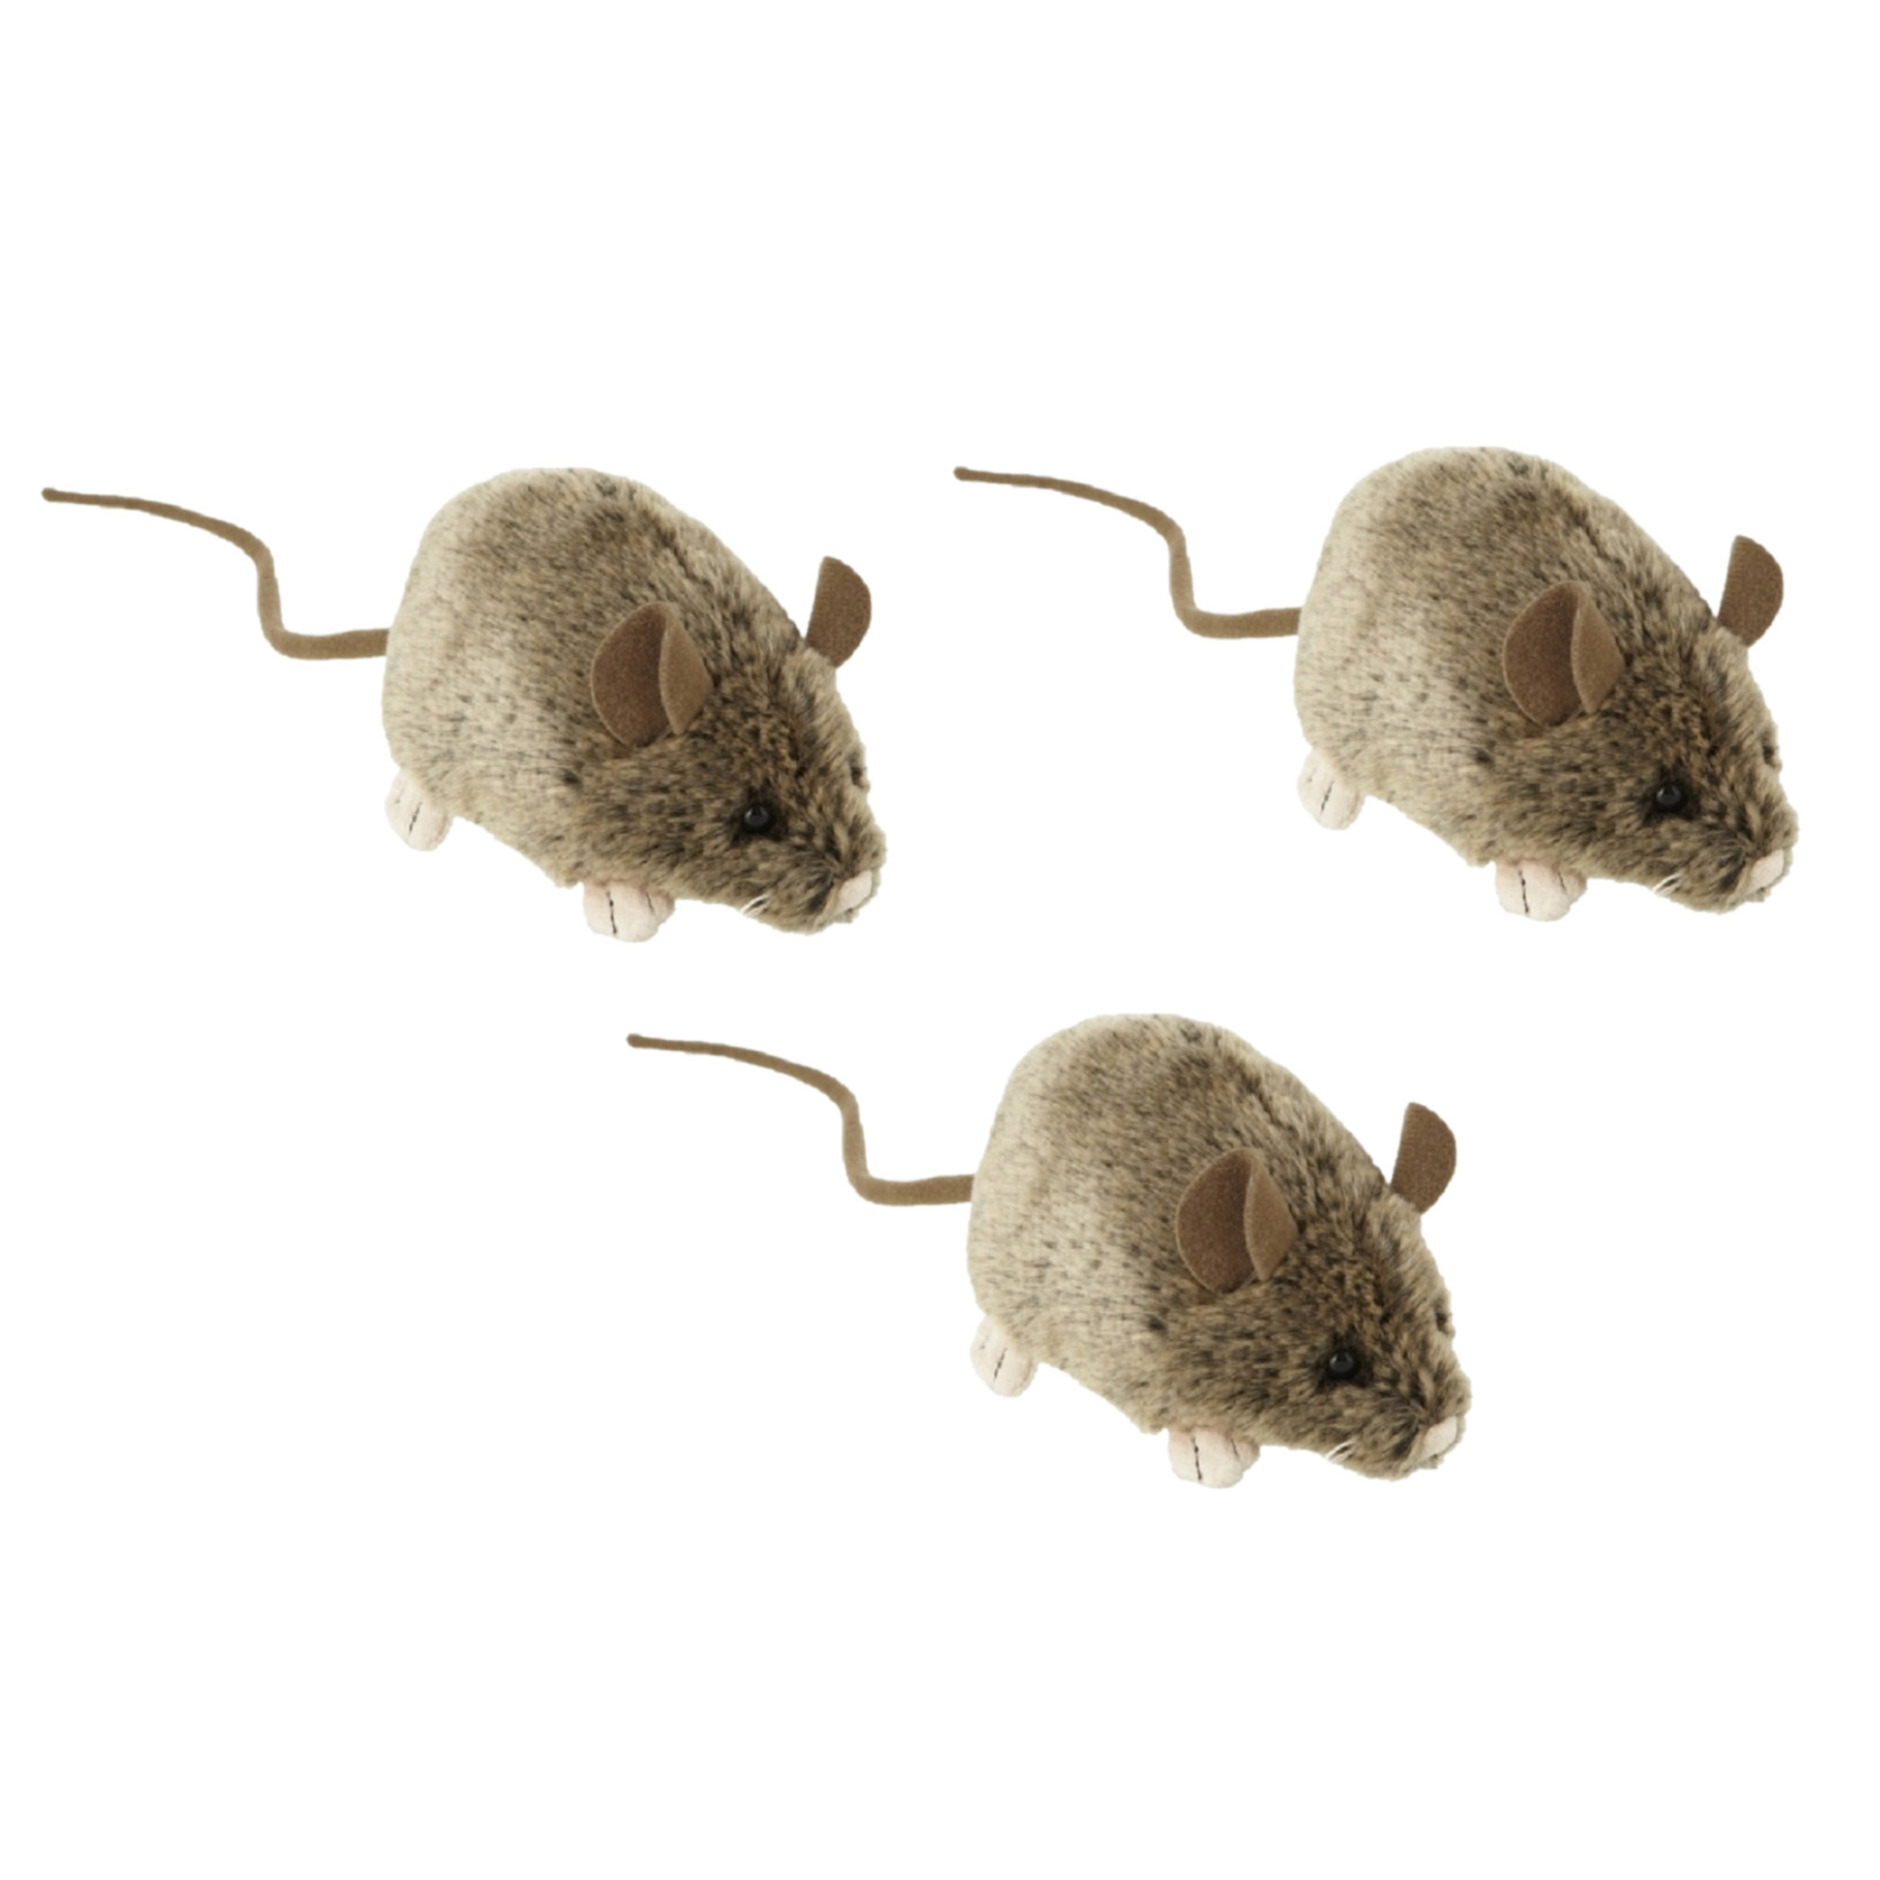 3x stuks knuffel muis-muizen van 12 cm